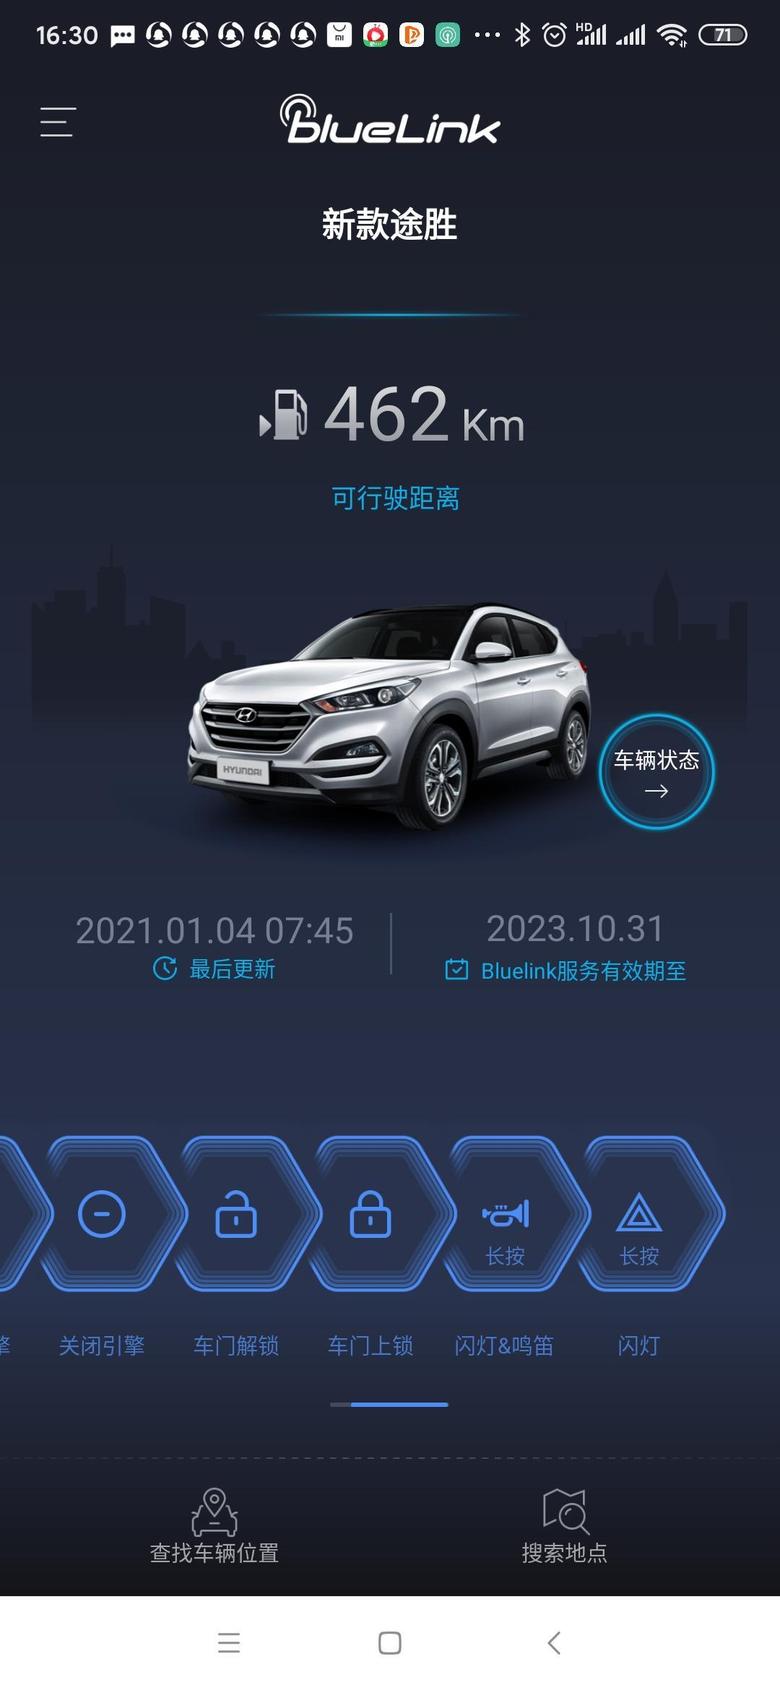 途胜下载了北京现代的BlueLink，看说明书上有很多功能，但下载之后发现只有查油耗，查停车位置，控制点火等功能，有哪位大神可以教教我如何解锁其他功能？